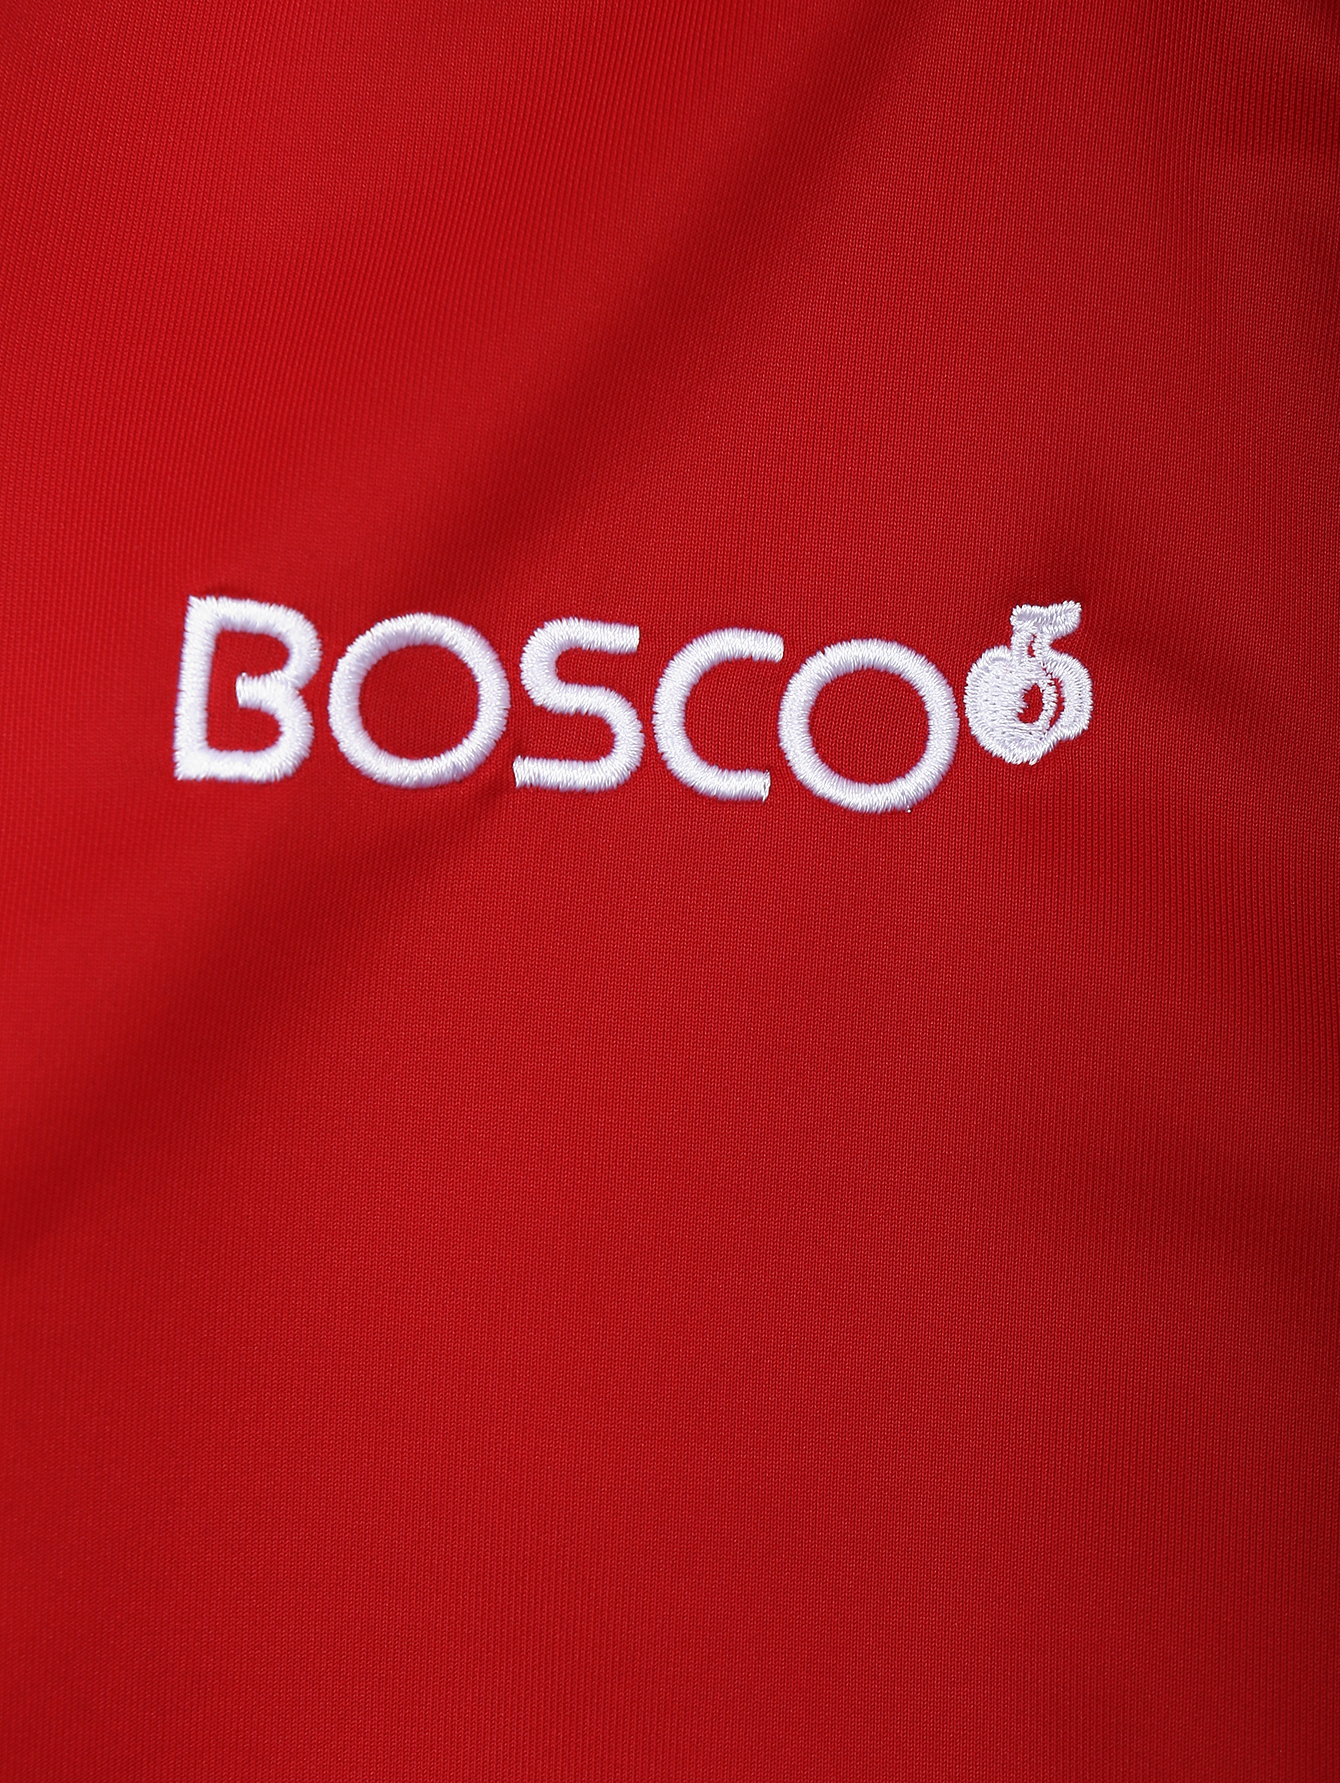 Ооо боско. Боско. Боско логотип. Боско спортивные костюмы. Bosco одежда логотип.